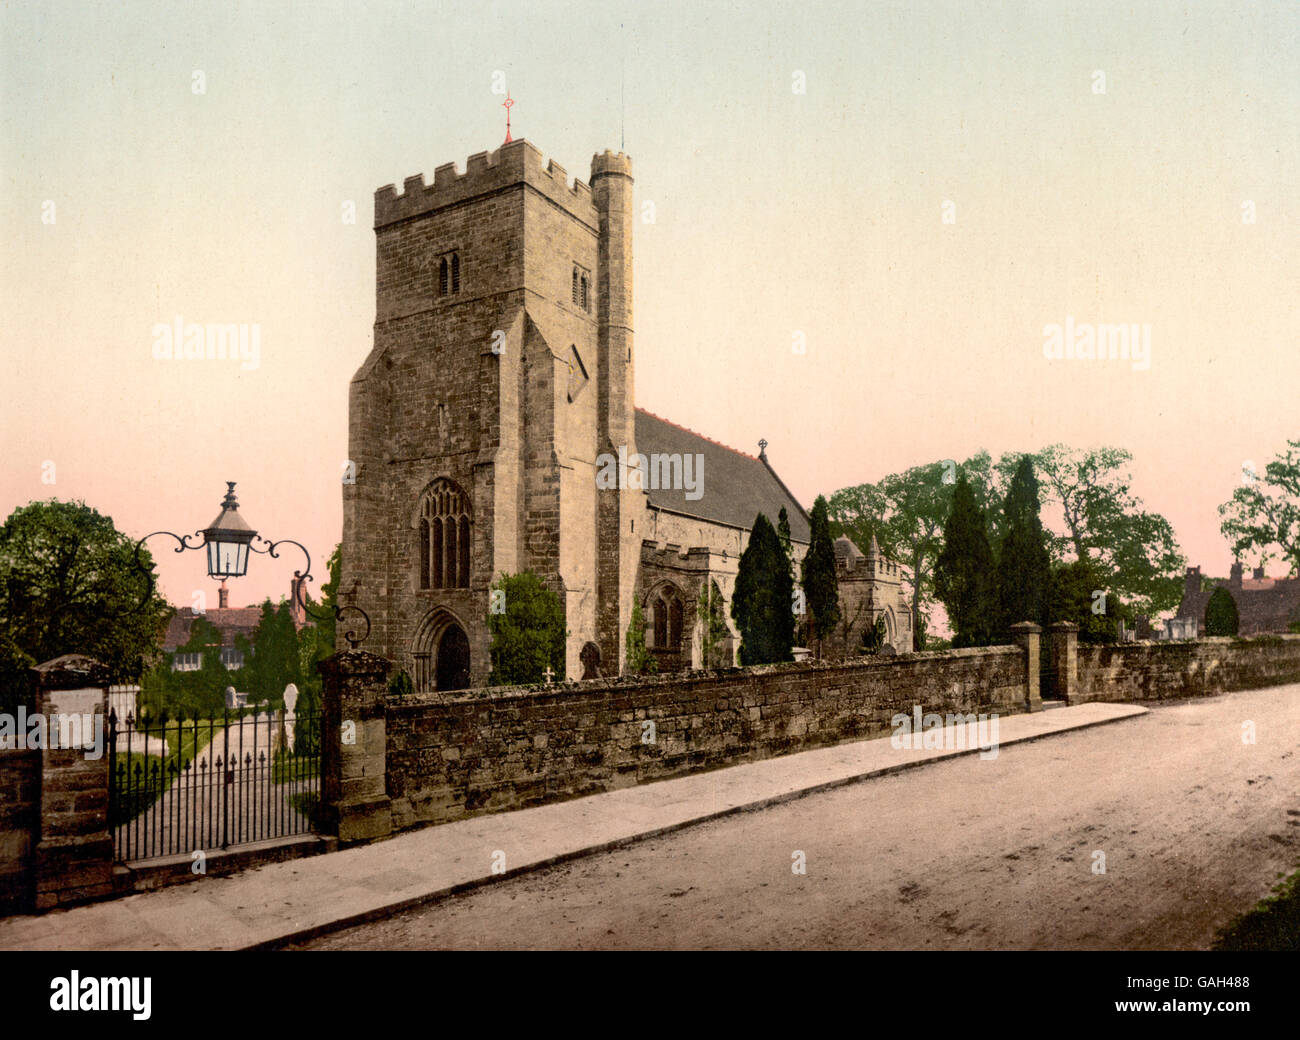 L'Église, bataille, en Angleterre. Image montre l'église Sainte Marie la Vierge, Battle, East Sussex, Angleterre, vers 1900 Banque D'Images